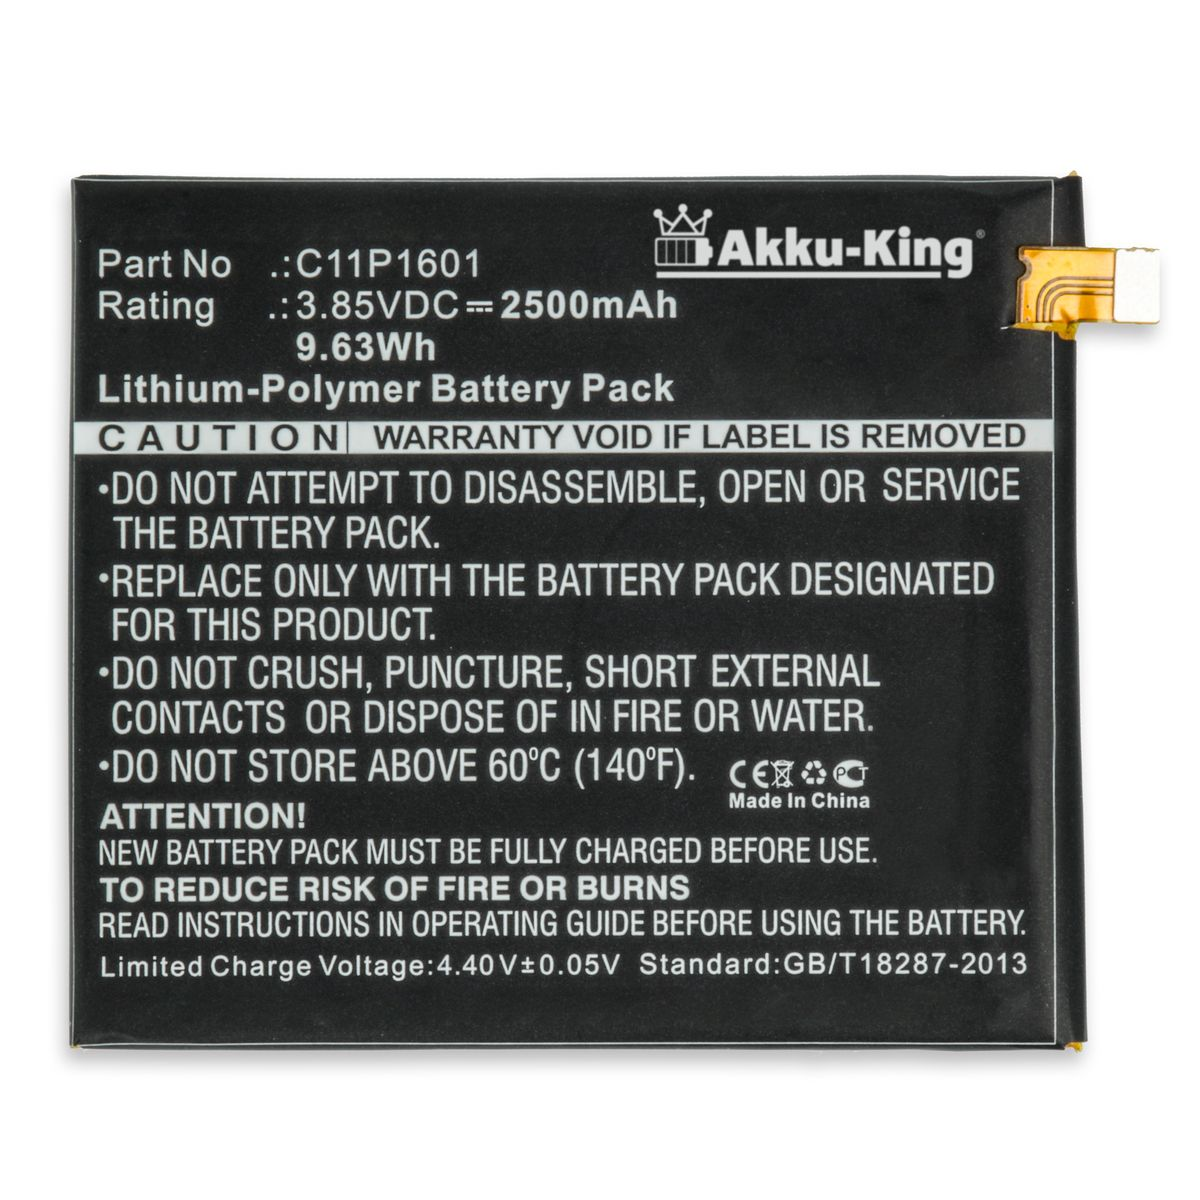 AKKU-KING Akku für Asus Li-Polymer 3.8 2500mAh C11P1601 Handy-Akku, Volt